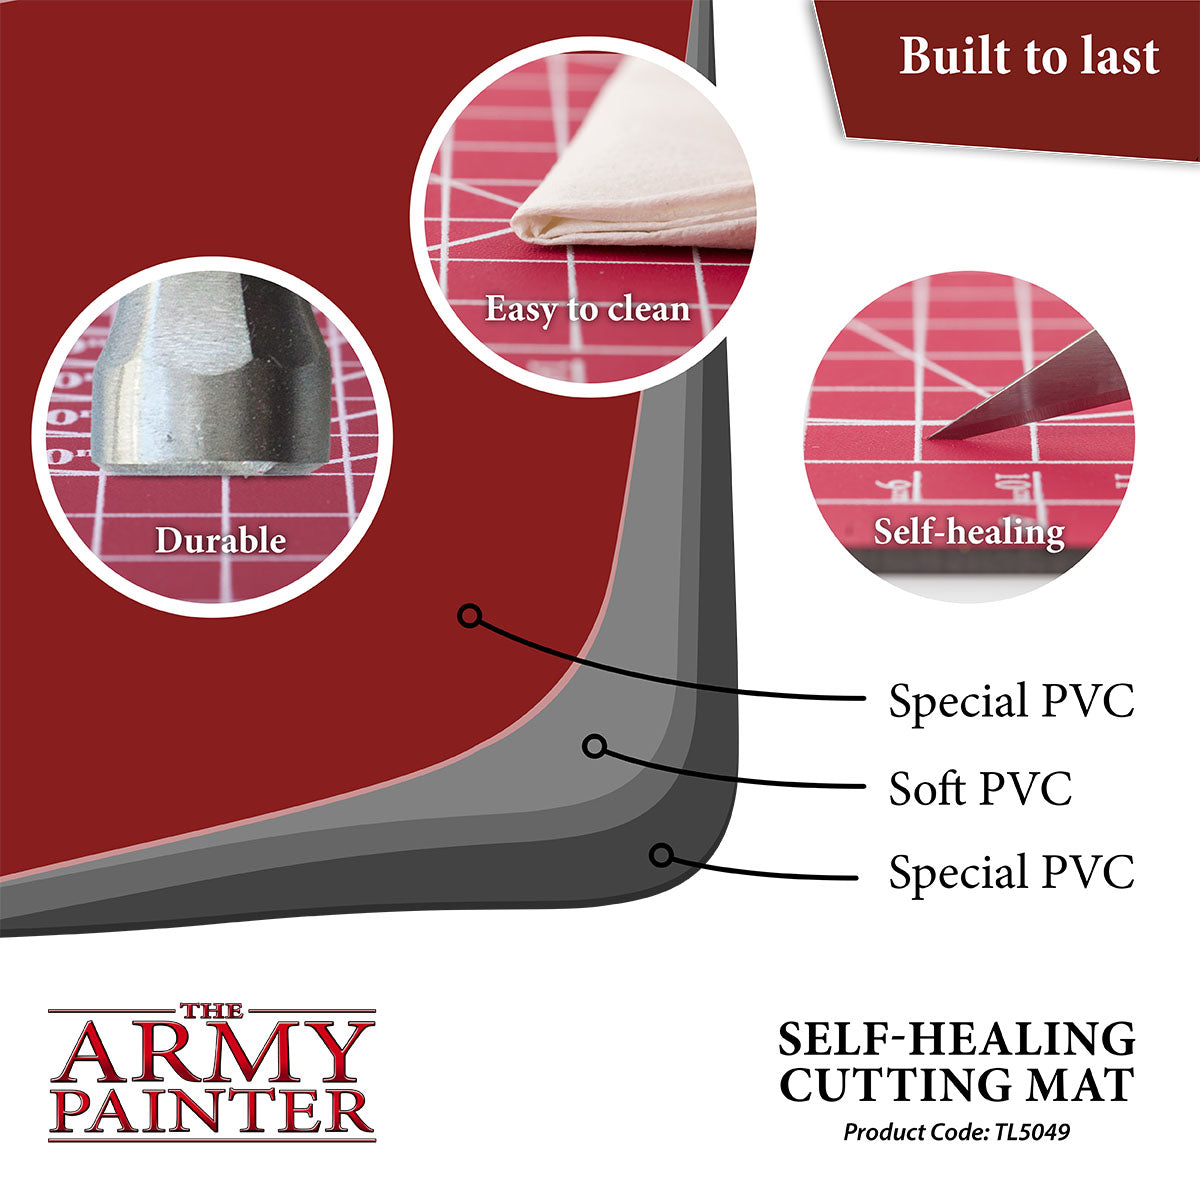 Army Painter: Self-healing Cutting Mat